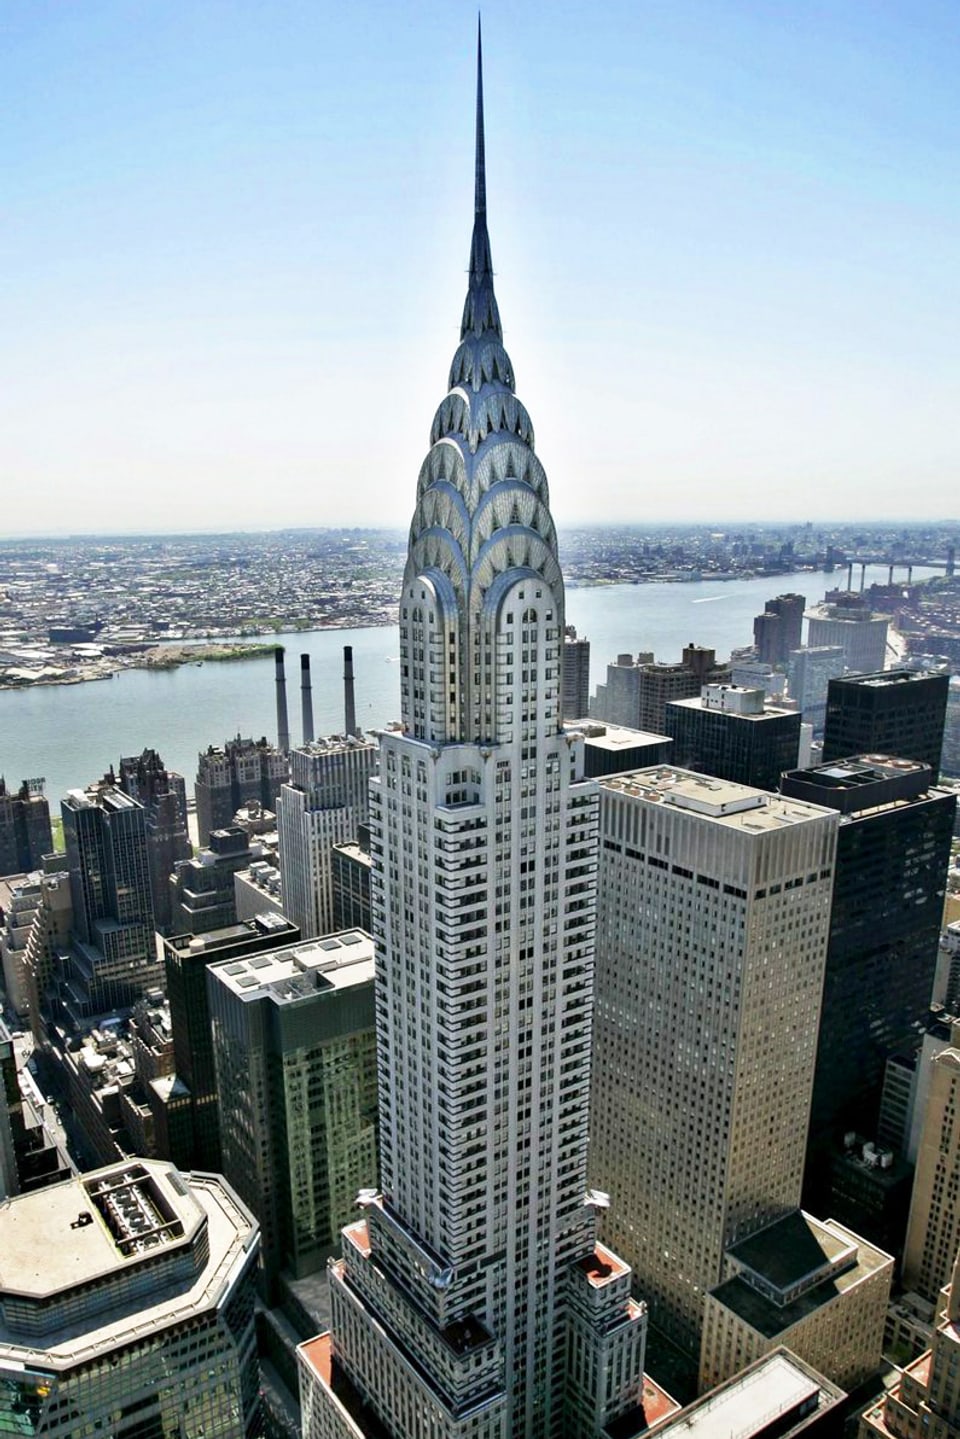 Ein Wolkenkratzer in New York. Es ist das Chrysler Building.